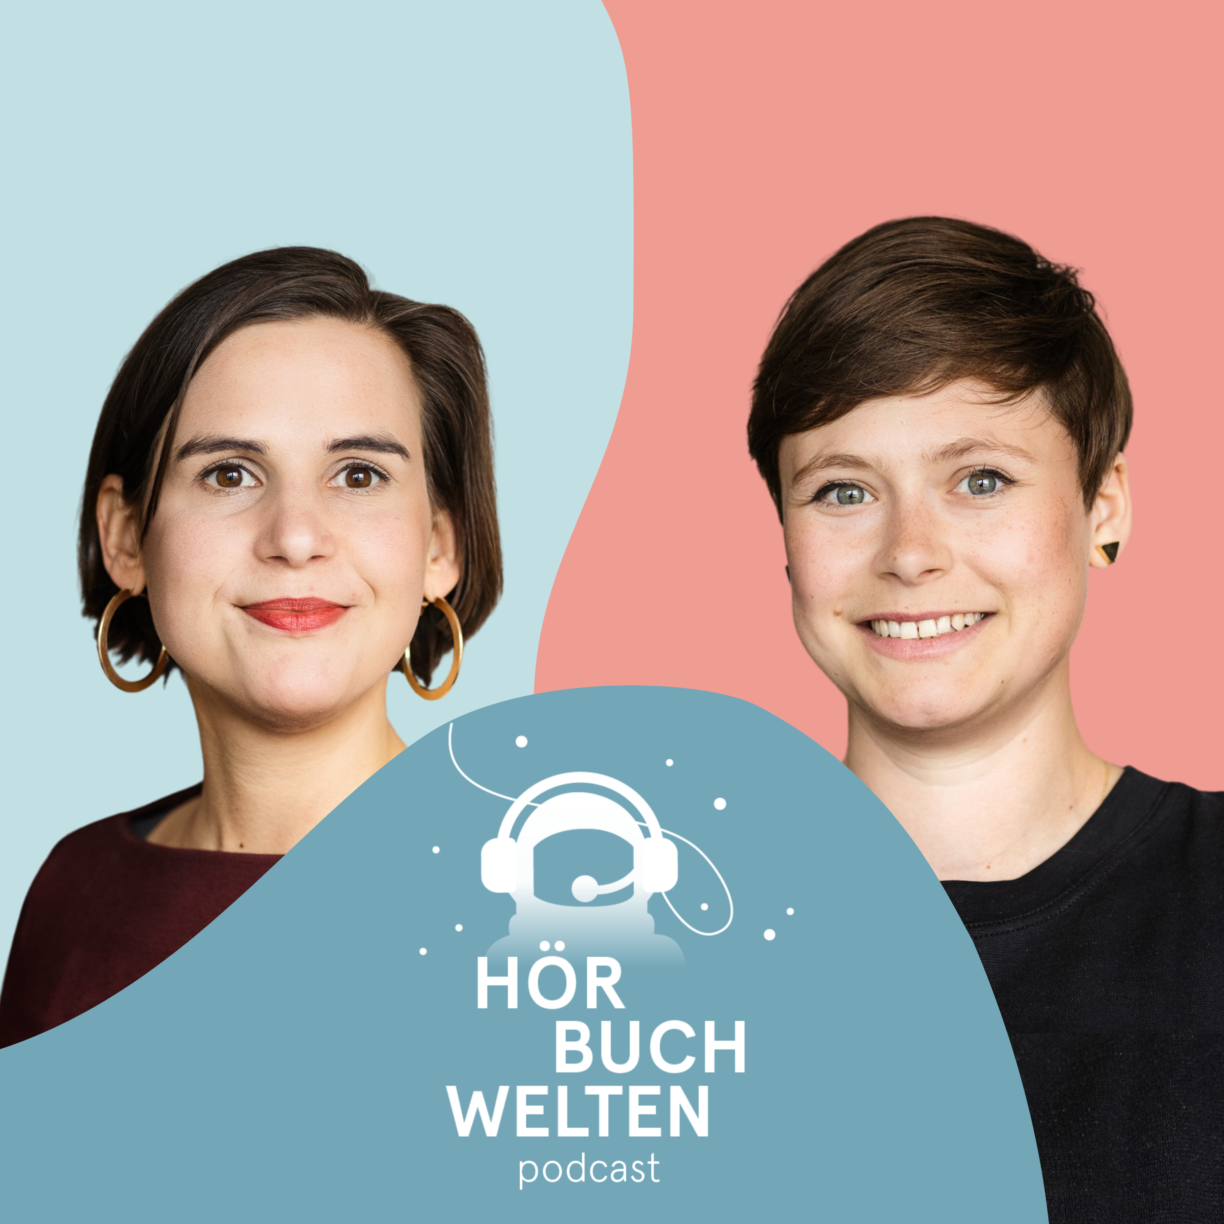 Podcast-Empfehlungen | Podcast-Liebe